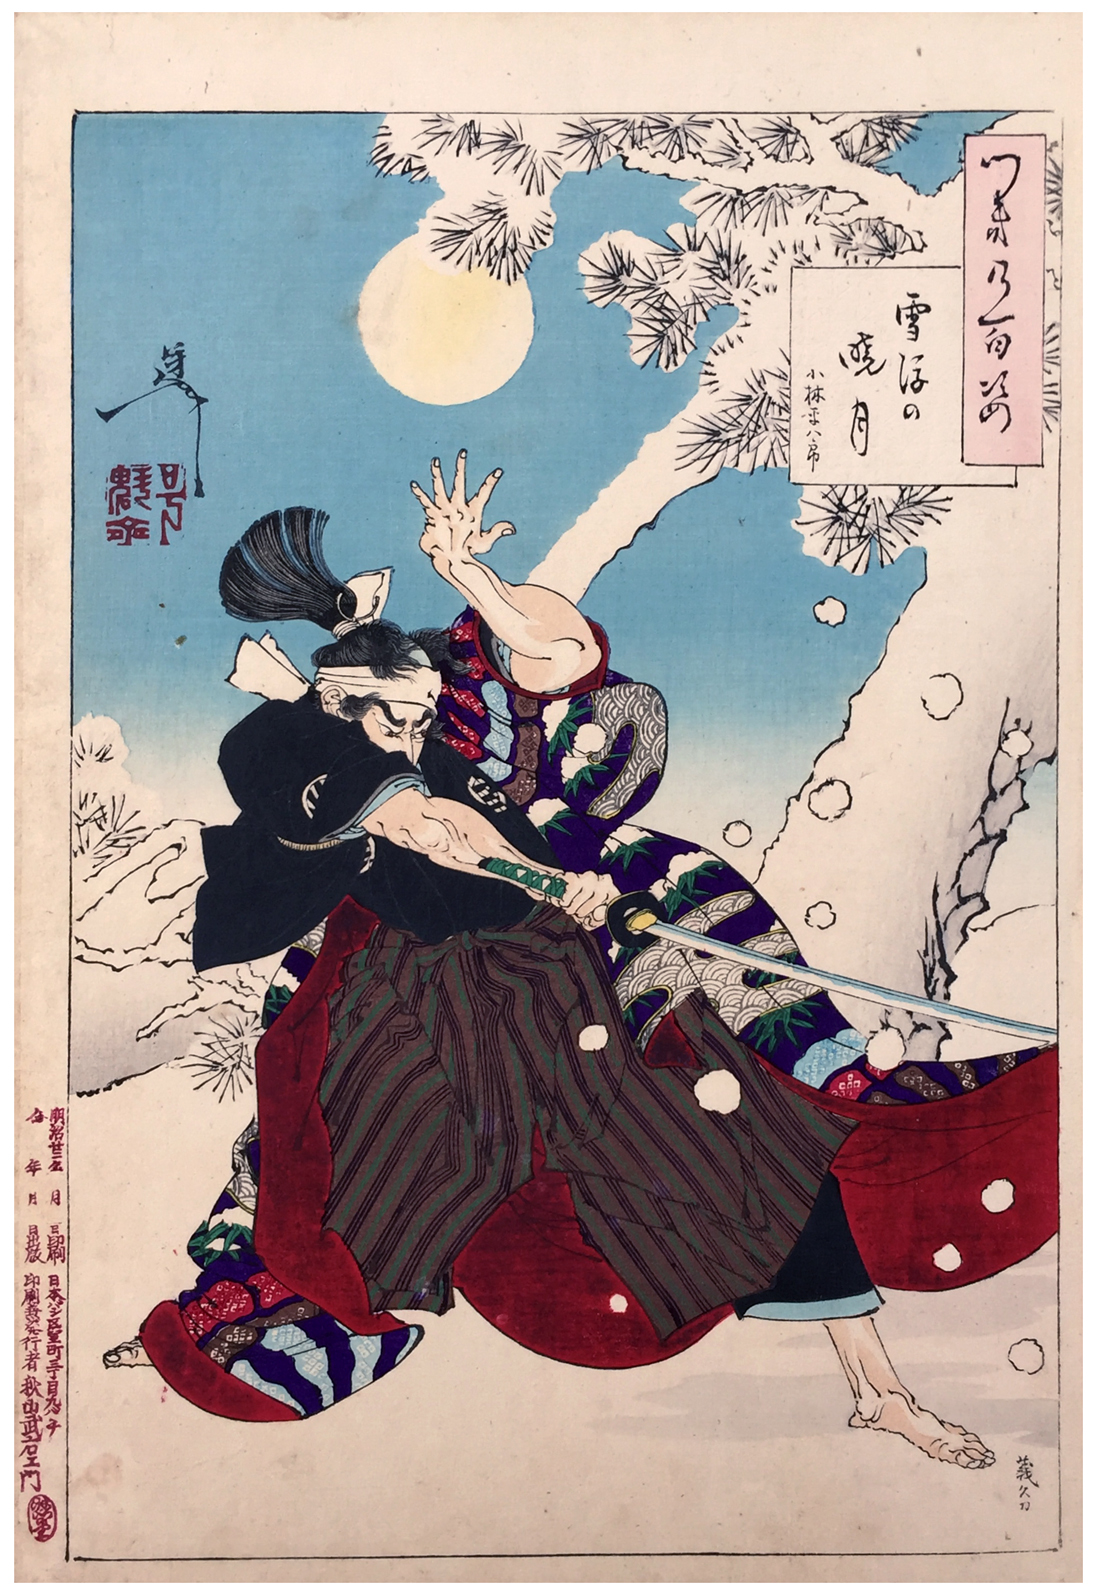 Seppu no Gyogetsu (Mond in der Morgendämmerung und fallender Schnee) by Tsukioka Yoshitoshi - 1889 Private Sammlung